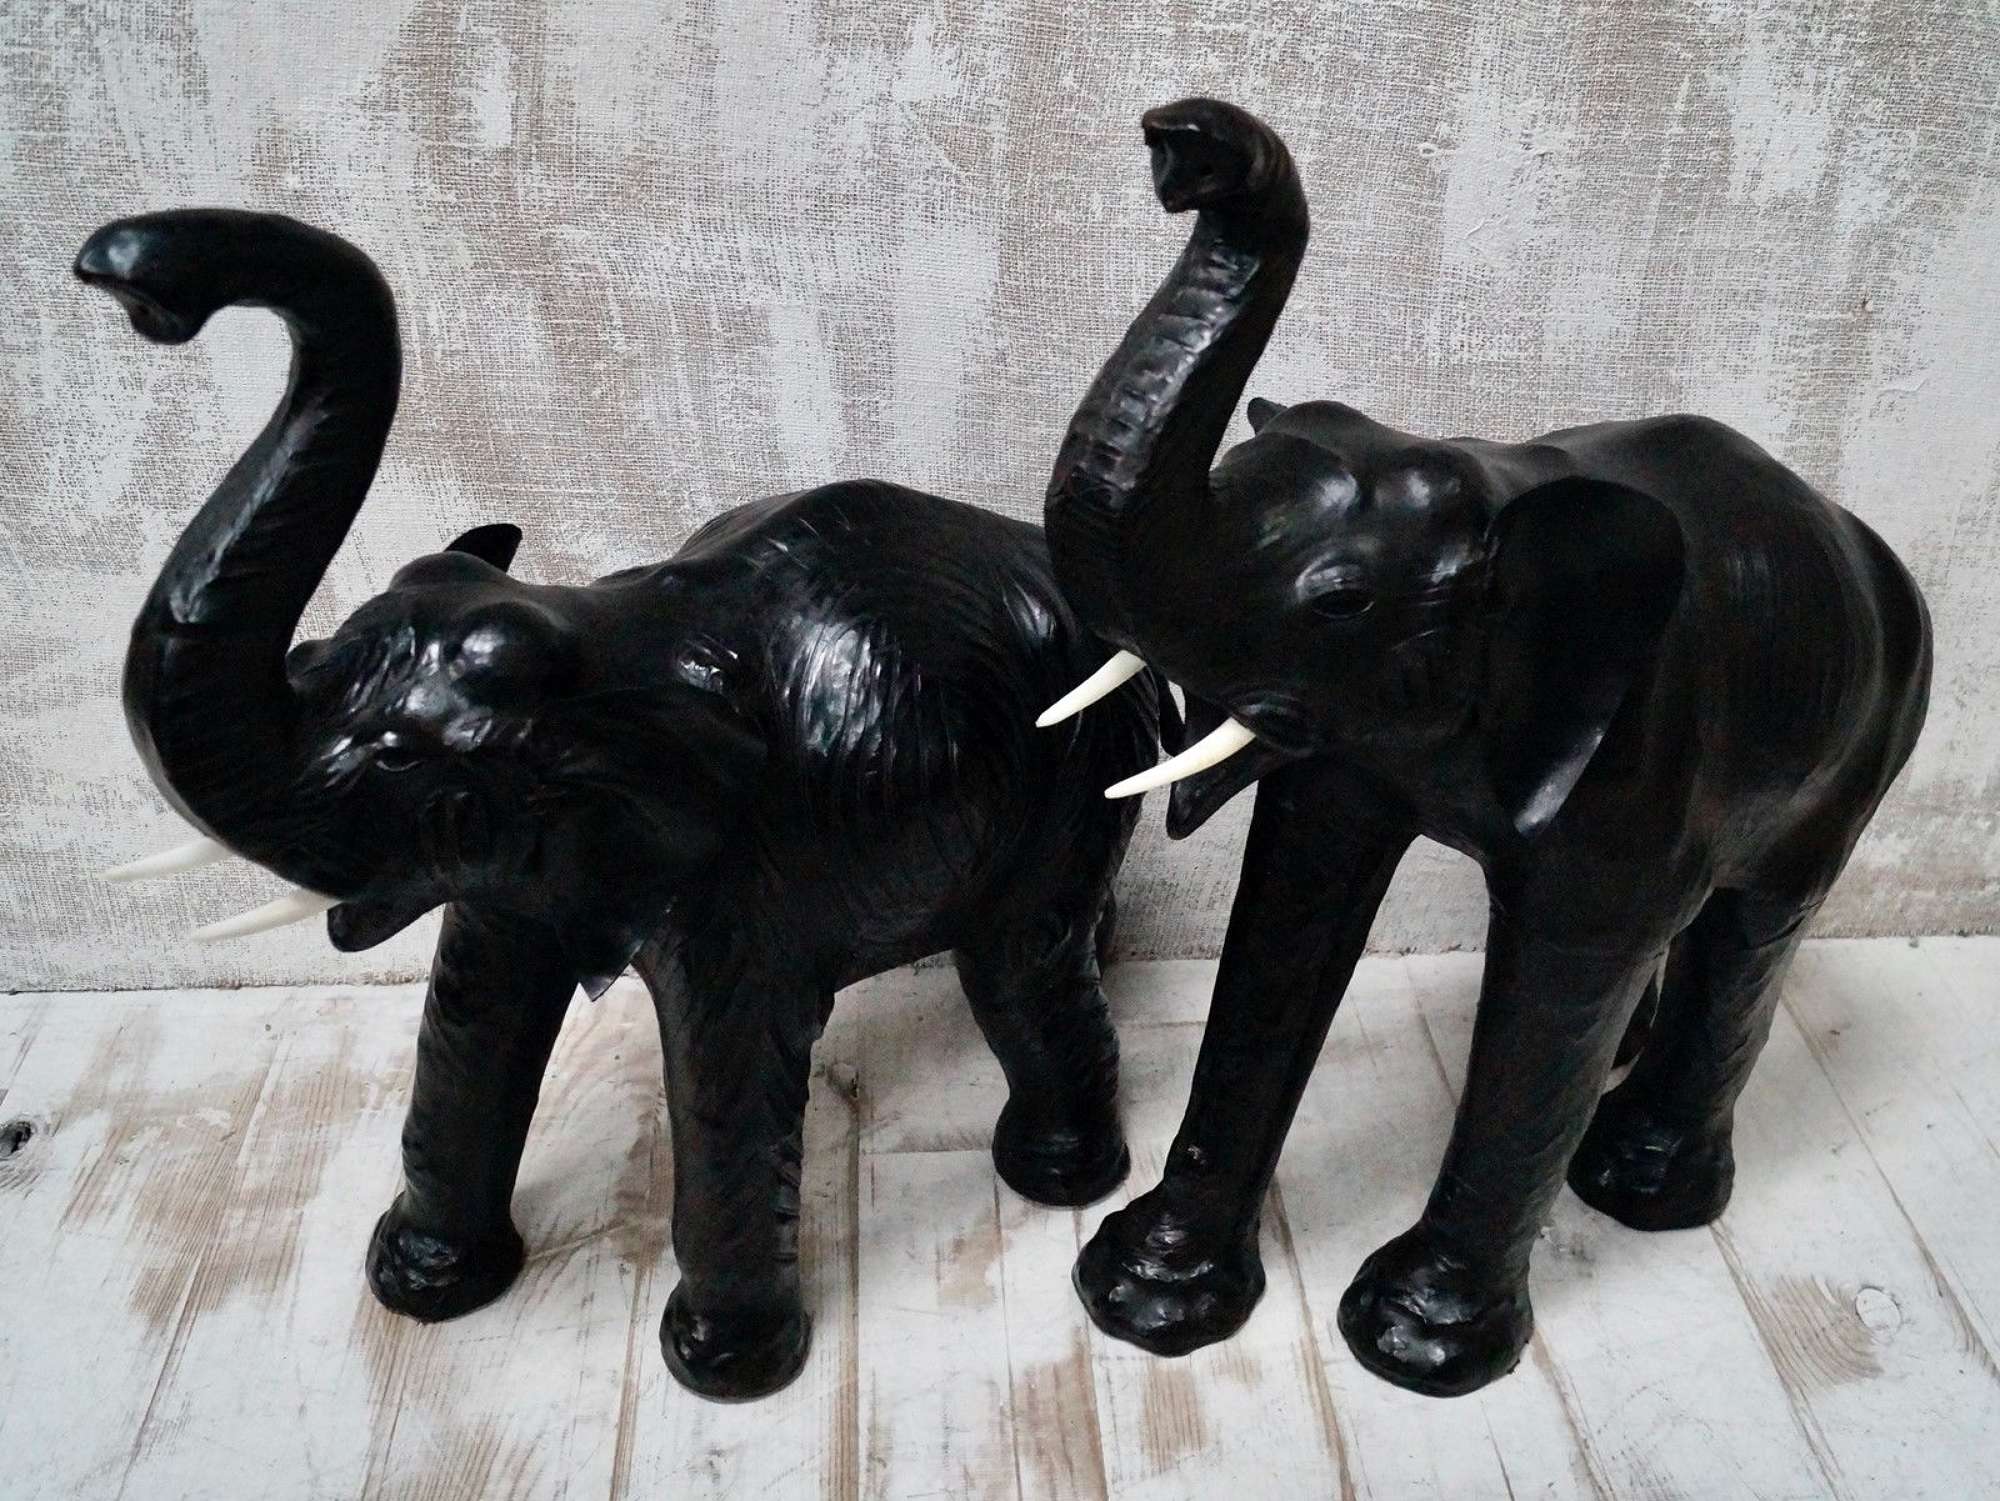 Antique Leather Elephant Sculptures